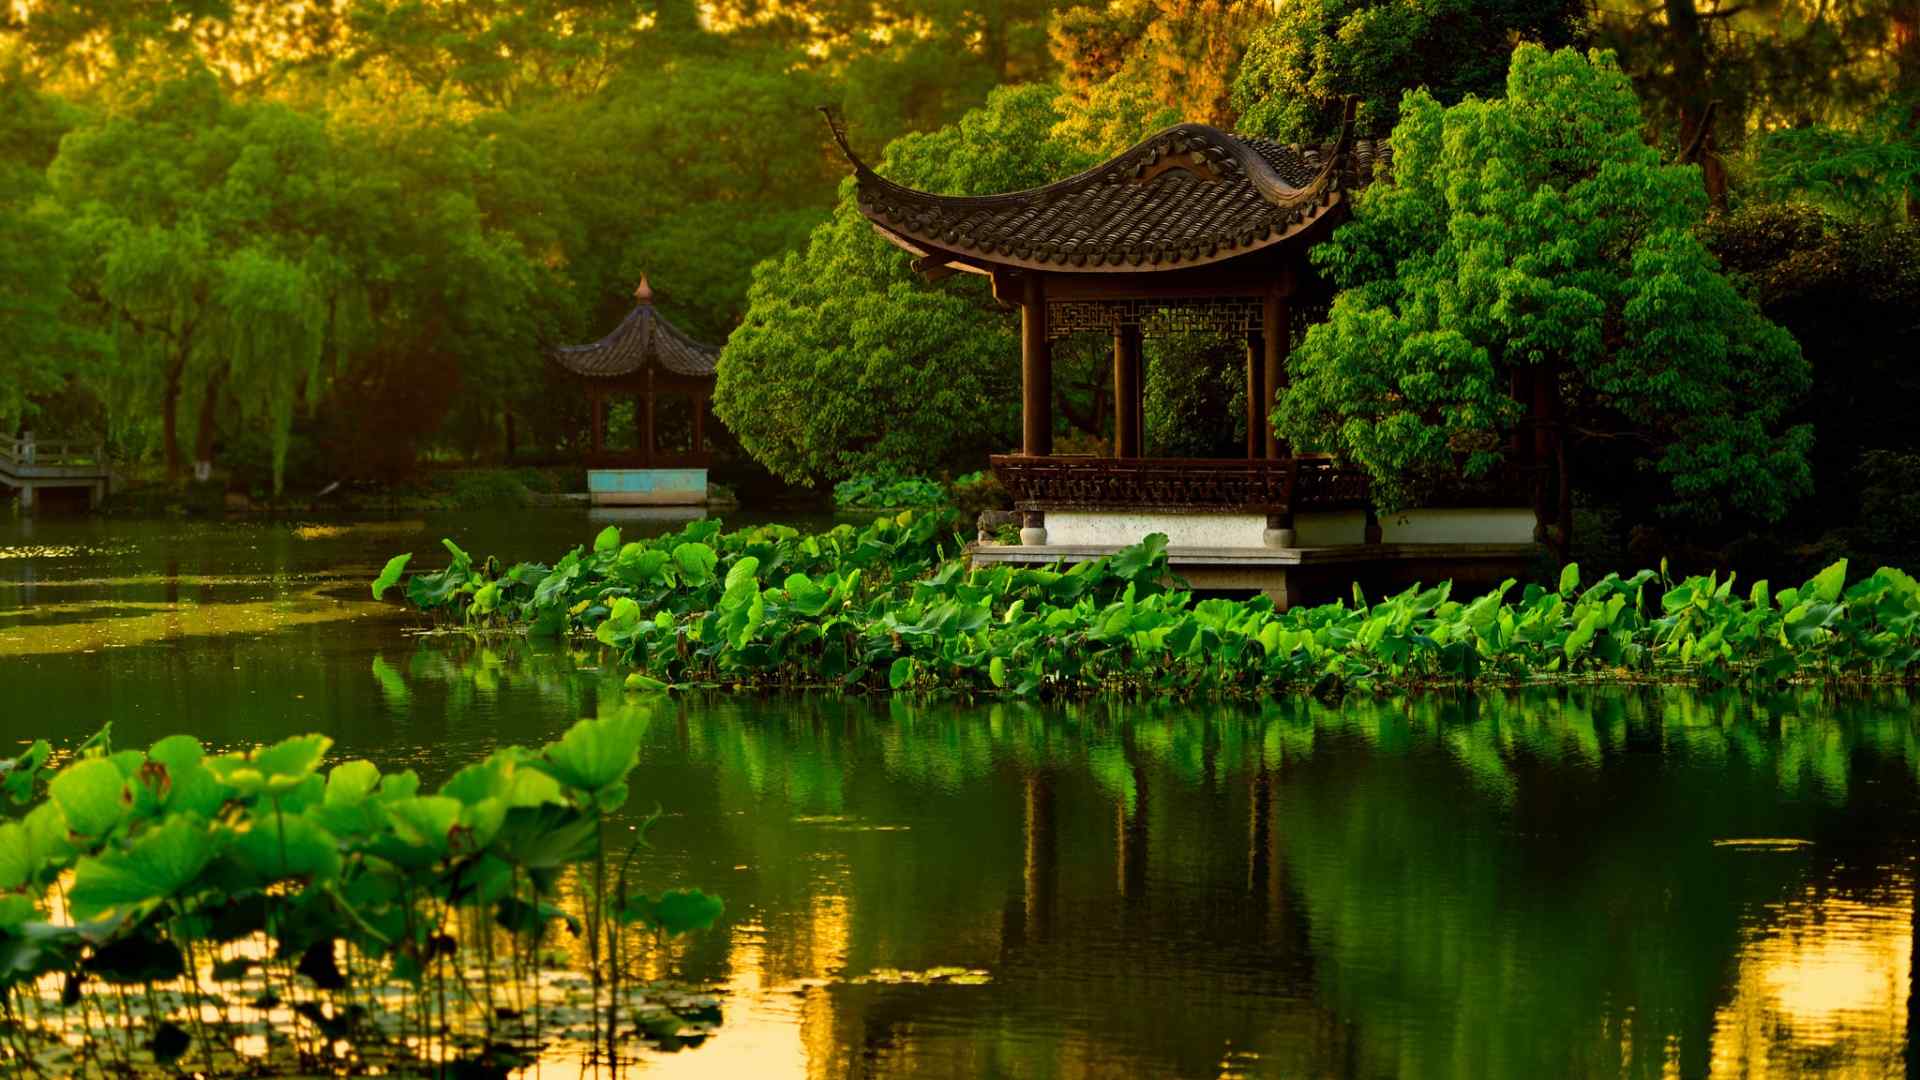 杭州西湖公园凉亭树木池塘荷花风景桌面壁纸